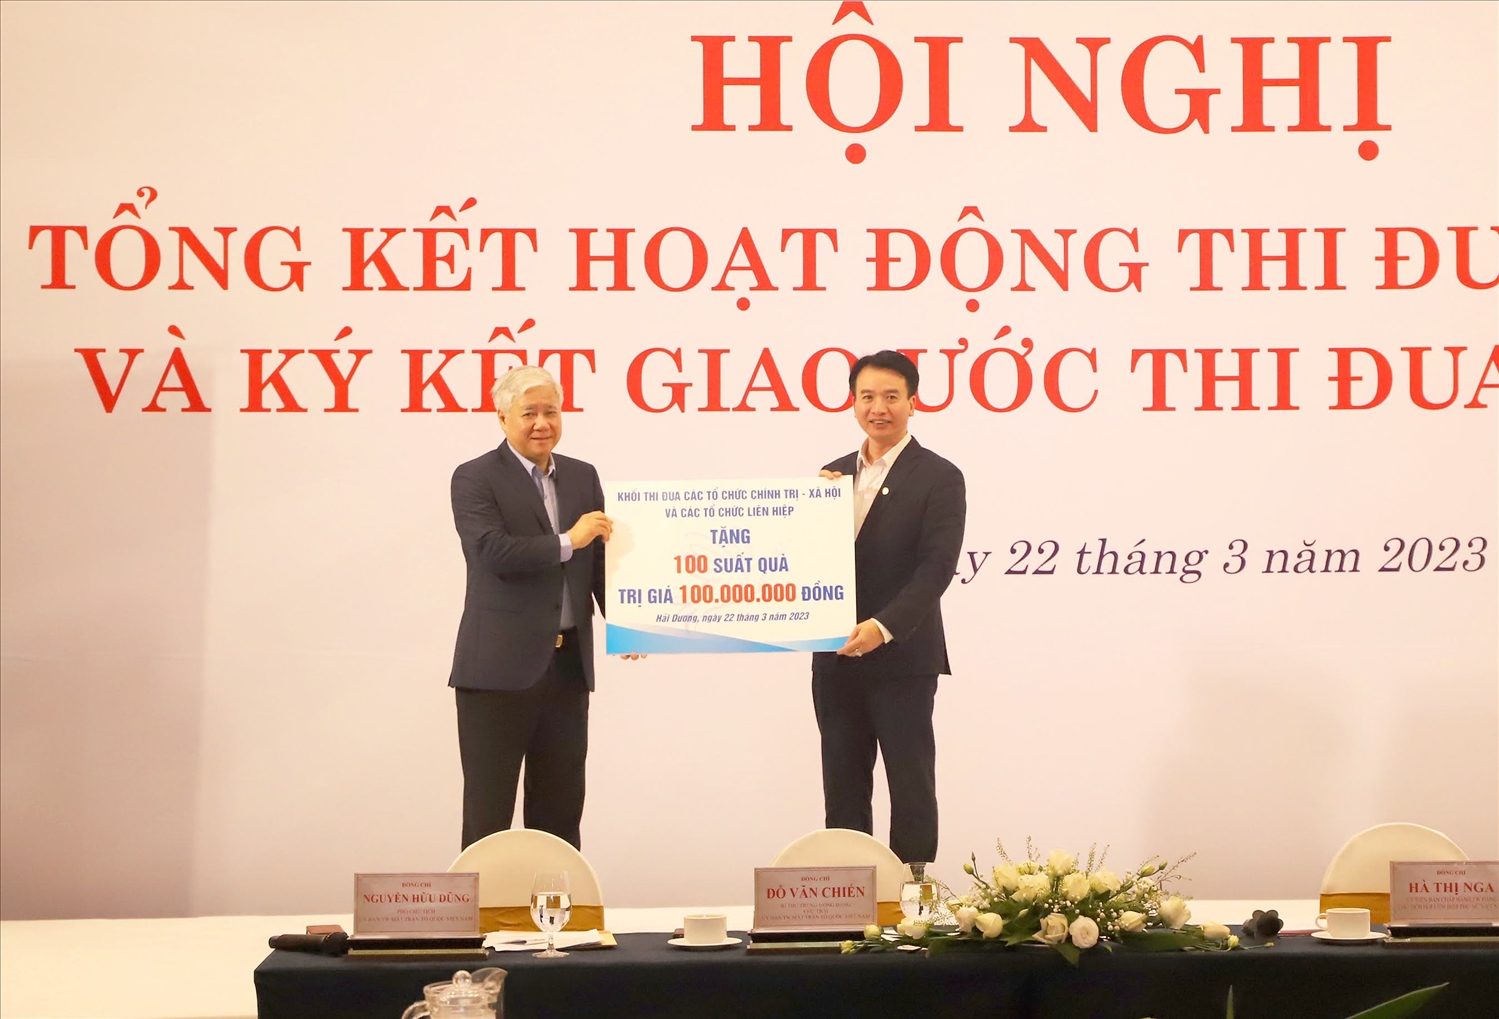 Chủ tịch Ủy ban Trung ương MTTQ Việt Nam Đỗ Văn Chiến đã trao tặng 100 suất quà cho hộ nghèo và trẻ em có hoàn cảnh khó khăn trên địa bàn tỉnh Hải Dương.